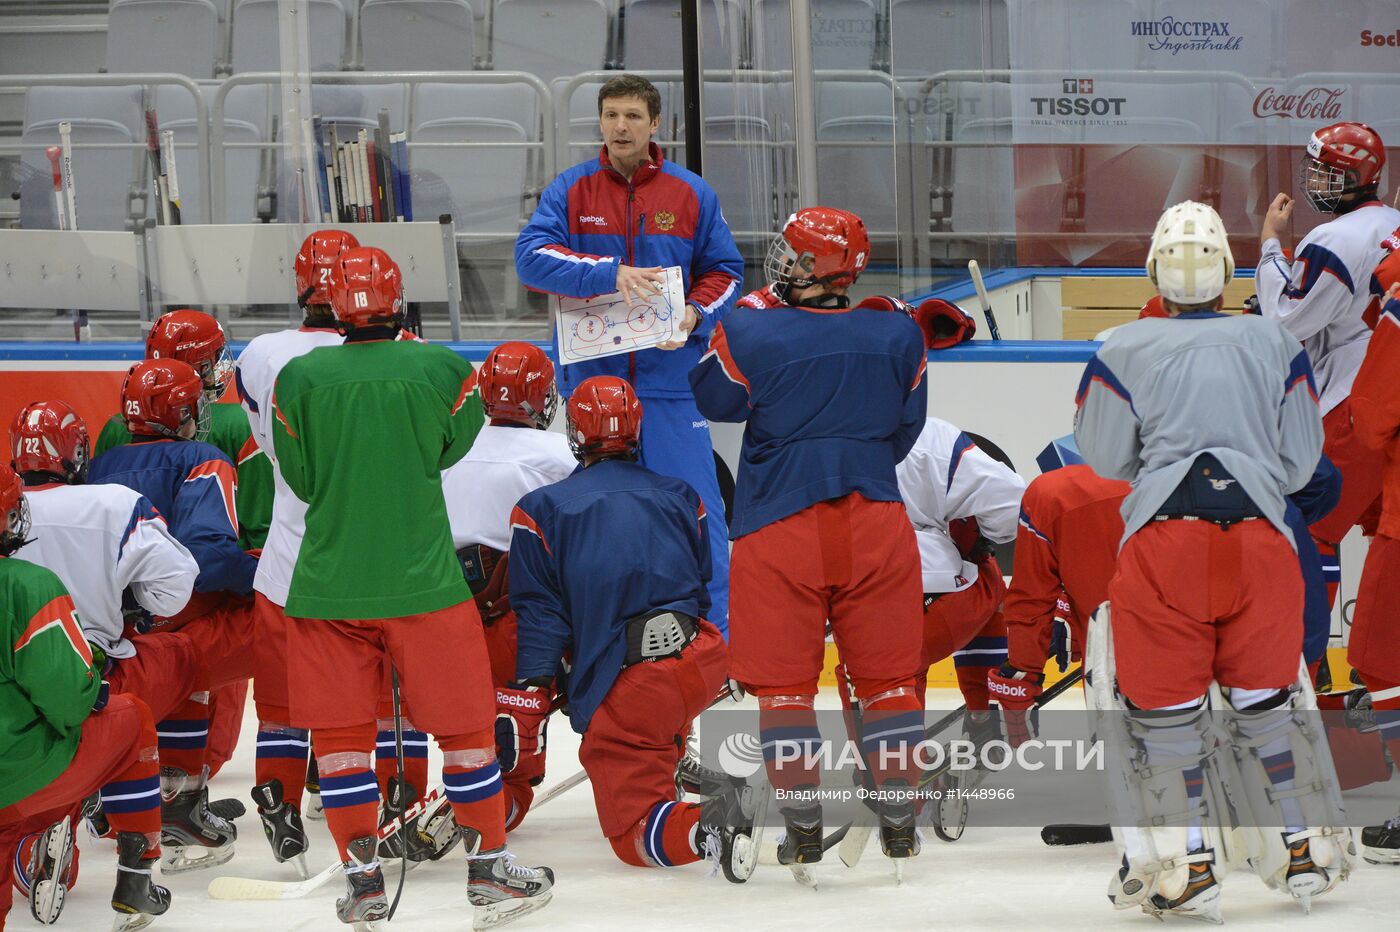 Подготовка к проведению юниорского ЧМ по хоккею в Сочи